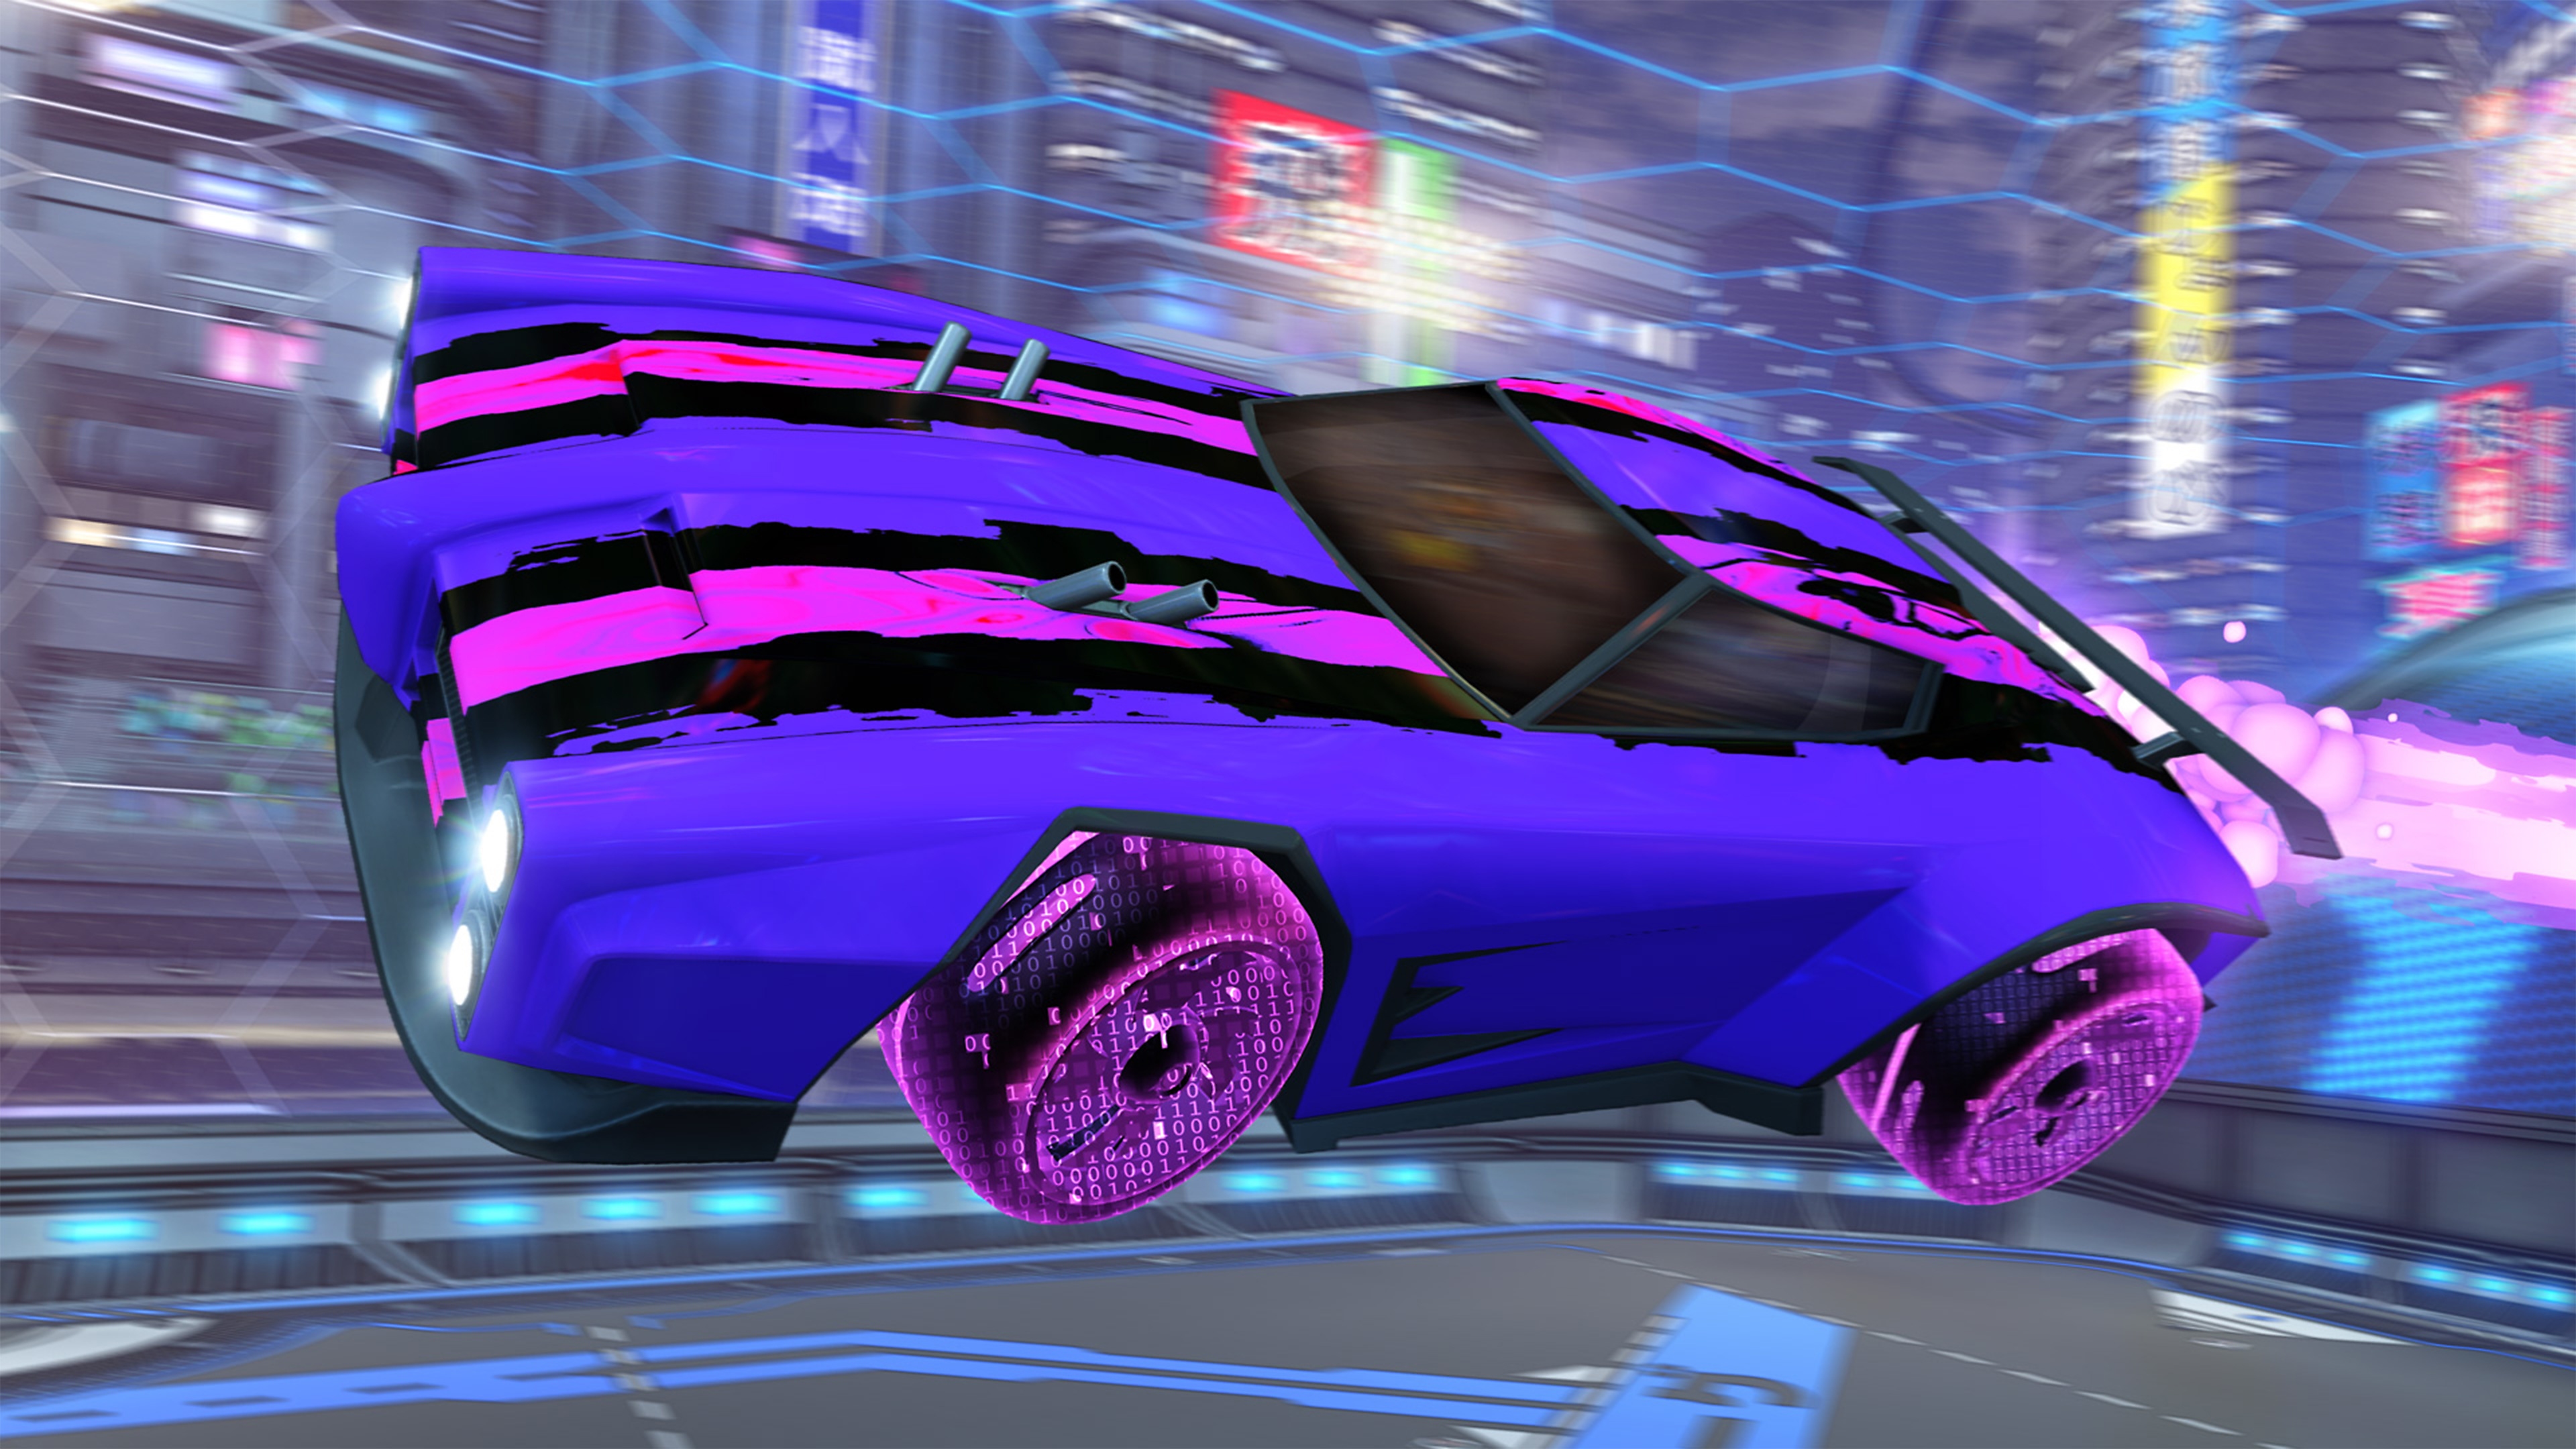 《Rocket League》螢幕截圖，顯示帶有粉紅與黑色賽車條紋的紫色車輛